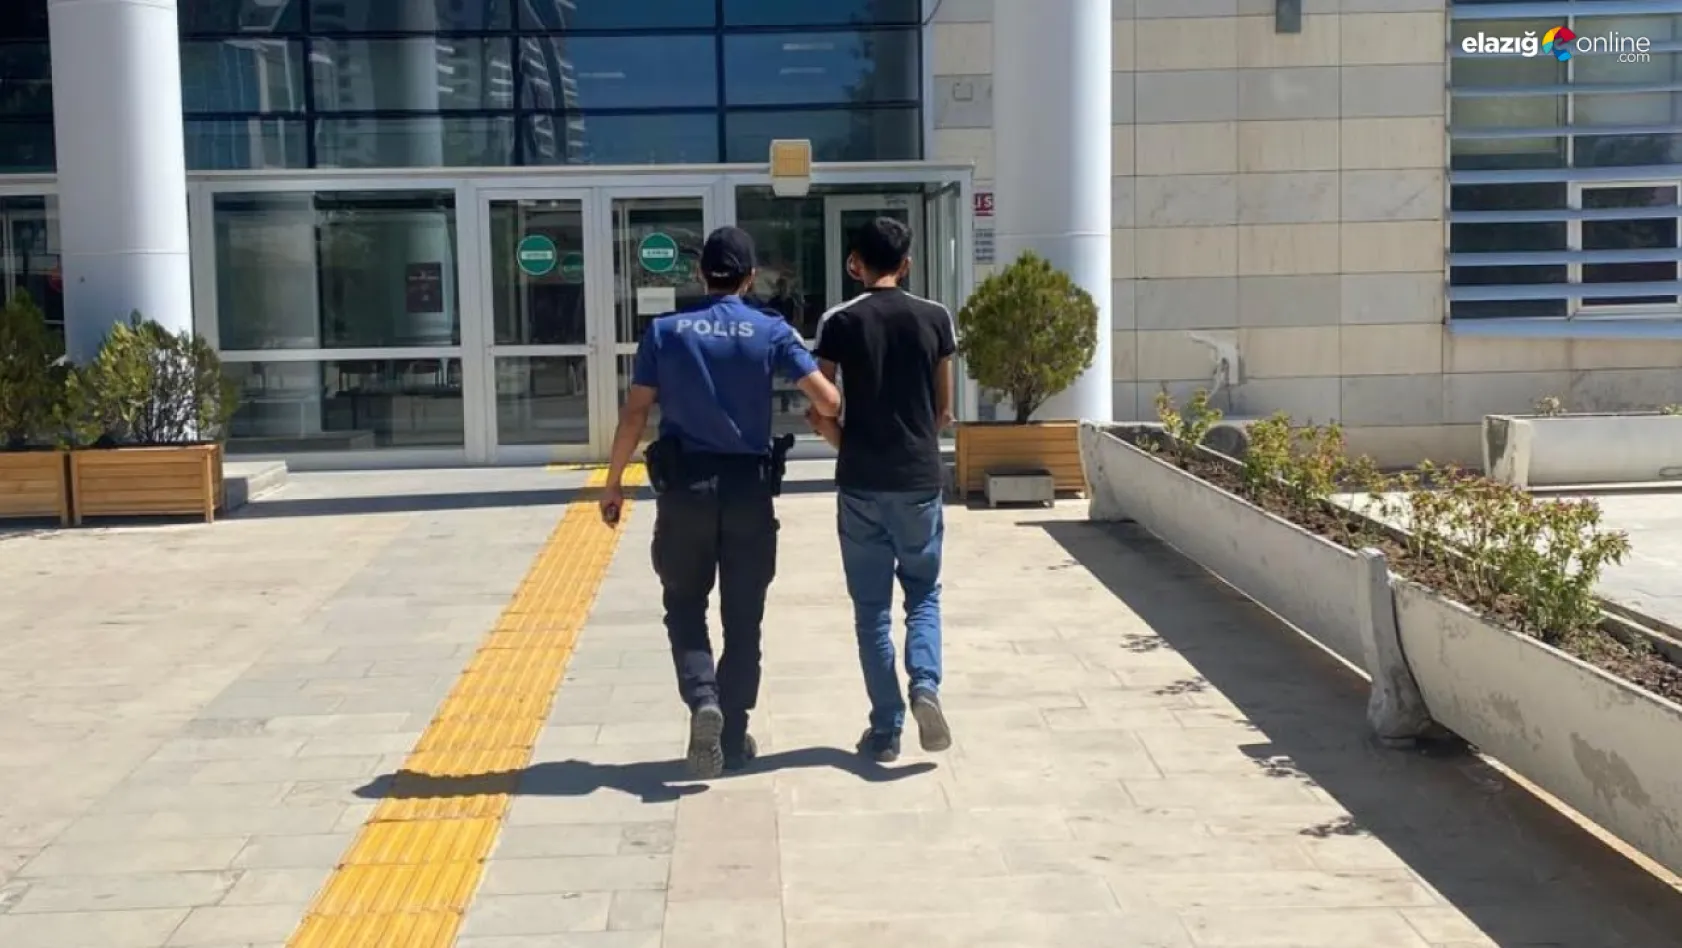 Elazığ polisi tarafından yakalanan hırsızlık şüphelisi gözaltına alındı